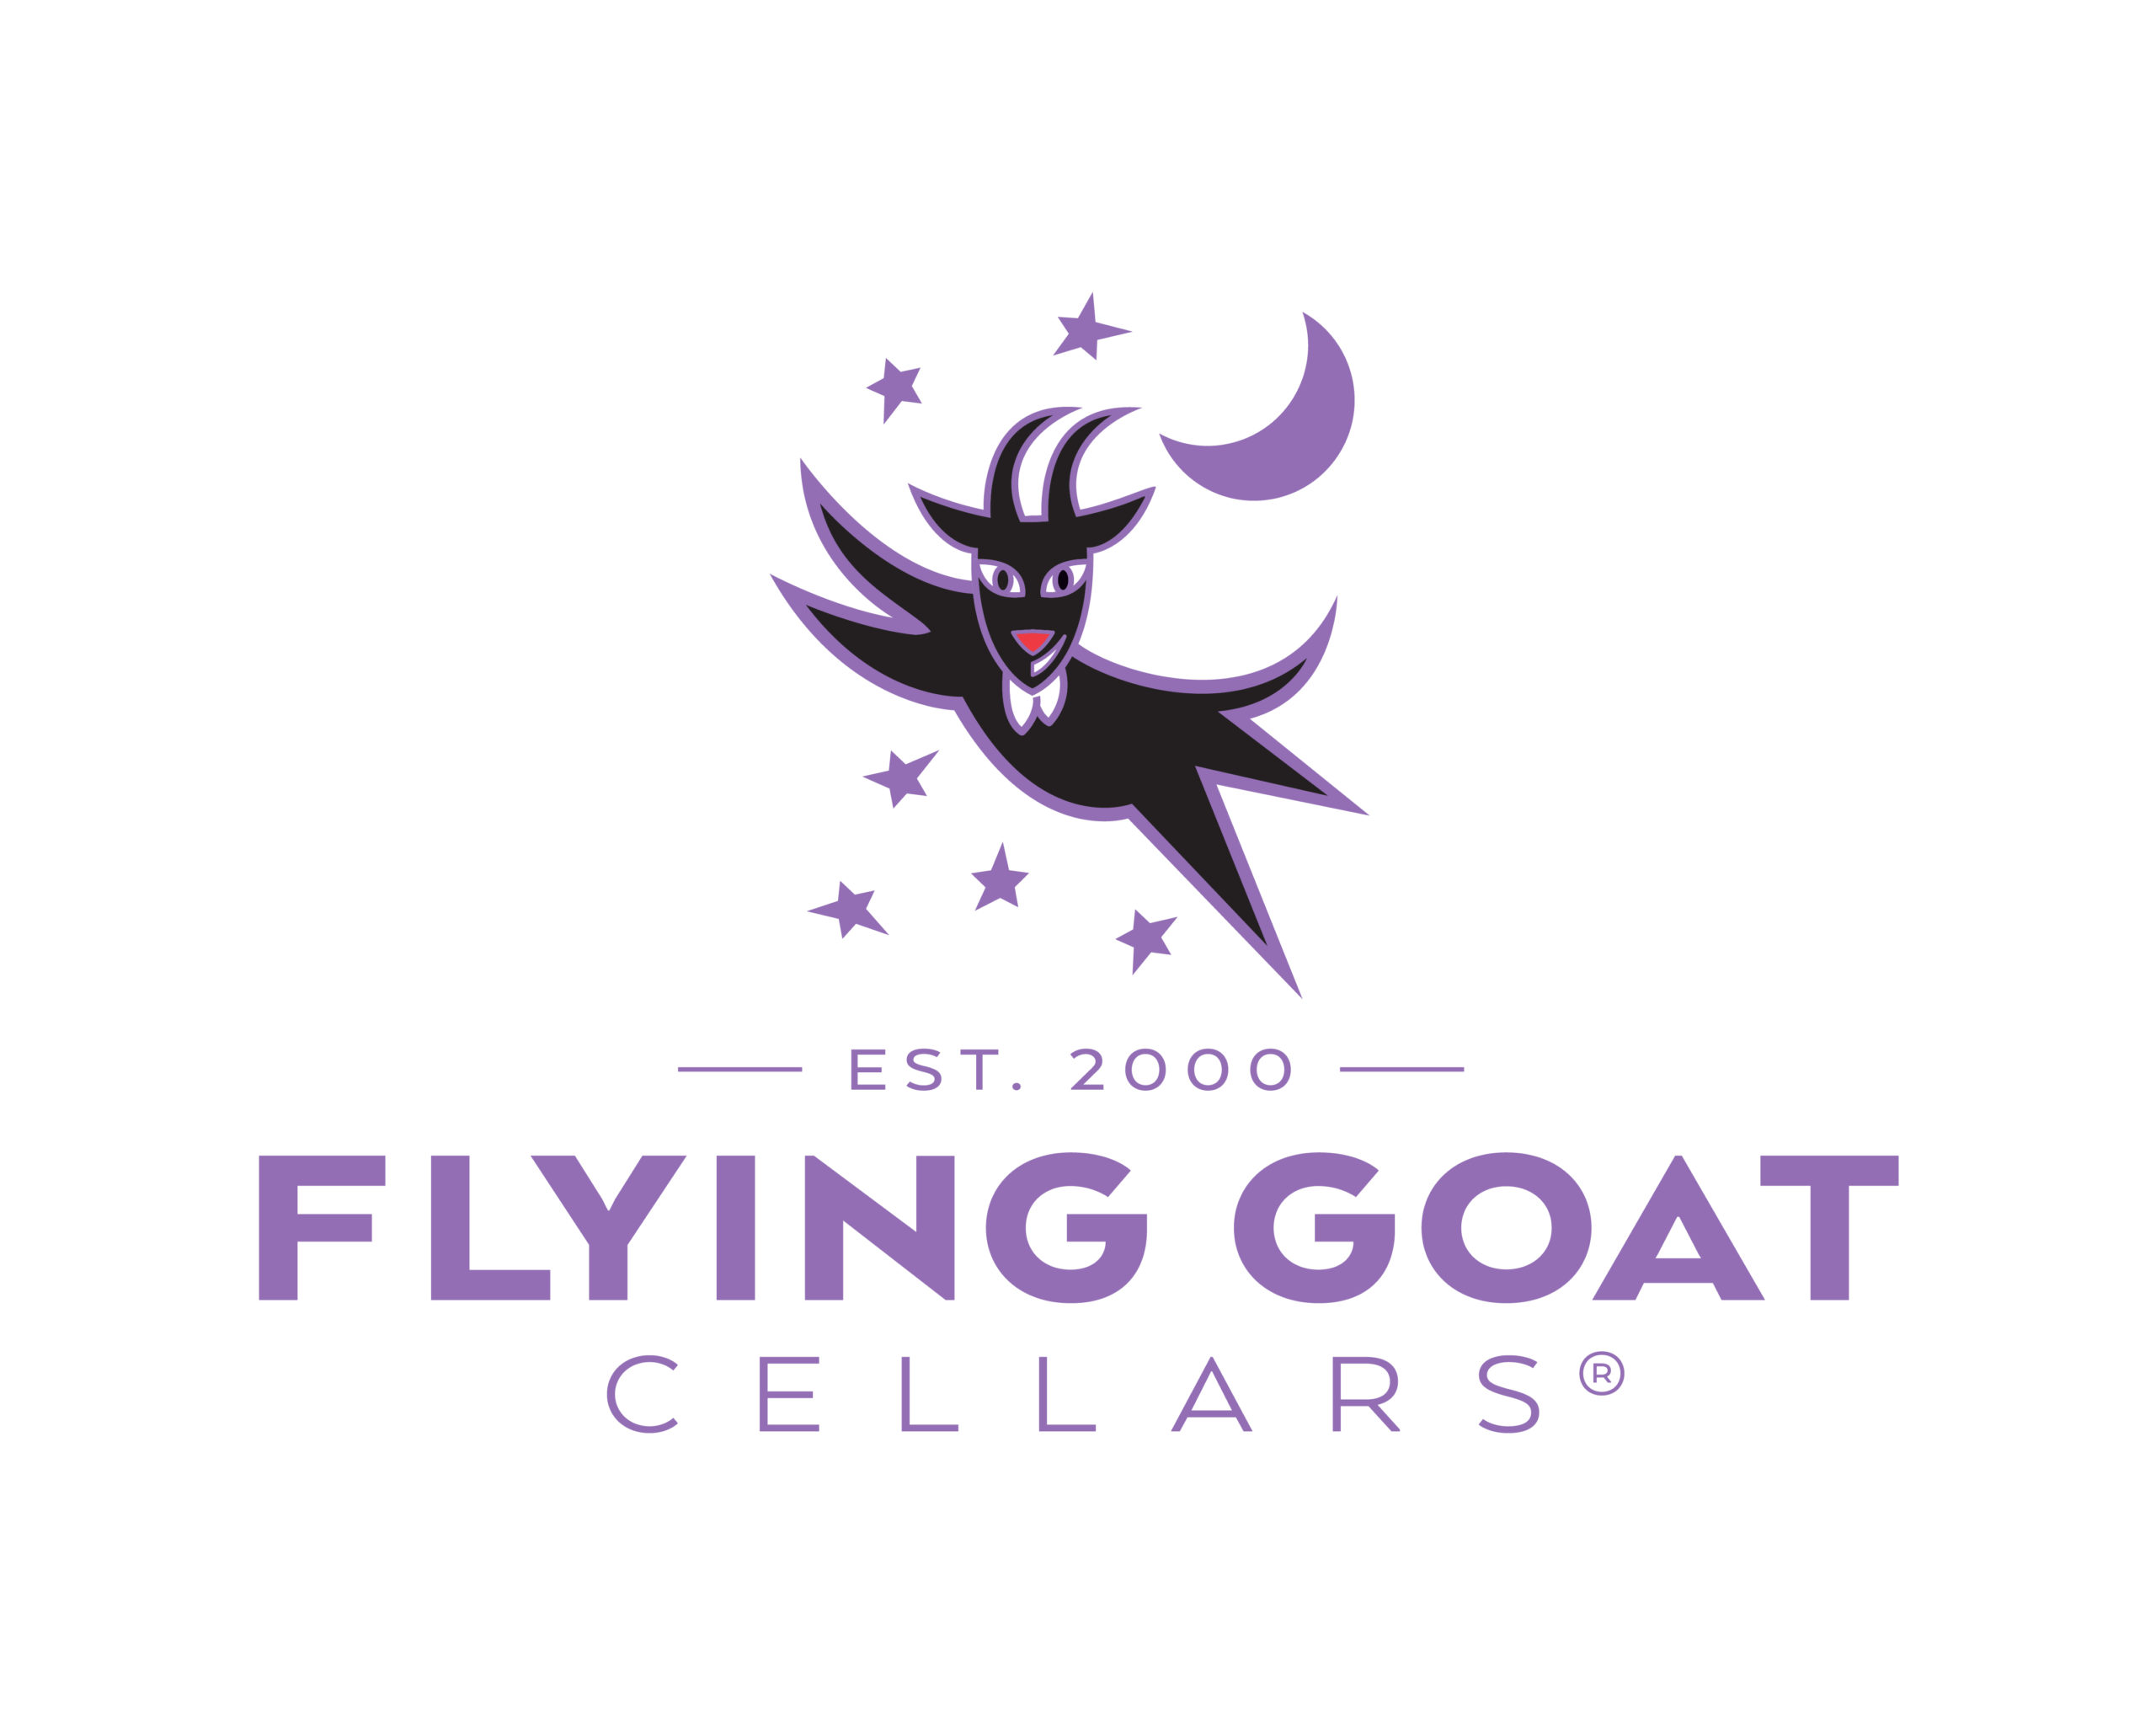 Flying Goat Cellars